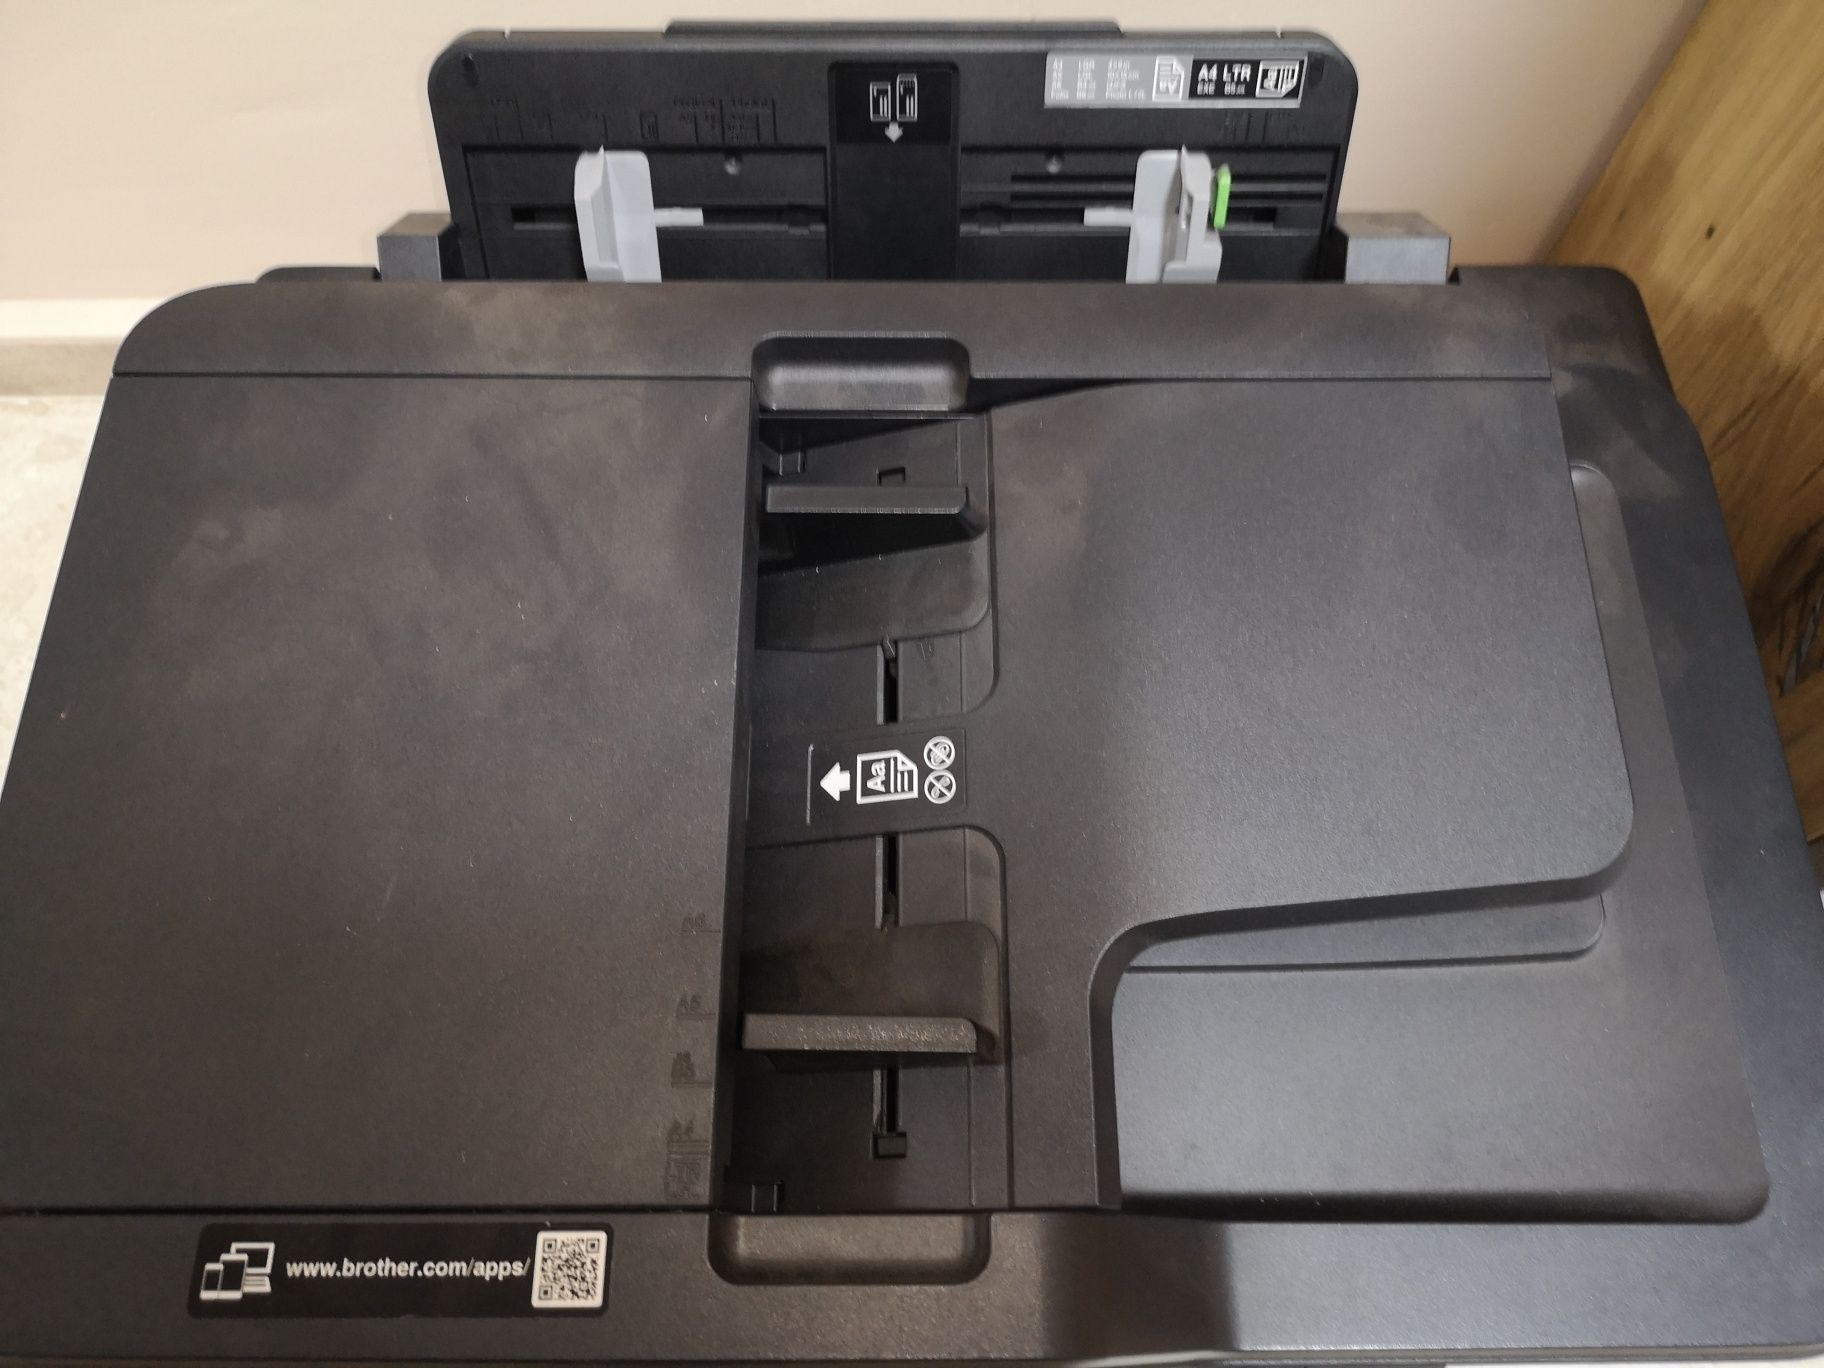 Принтер, скенер, копир машина Brother MFV-J5730DW